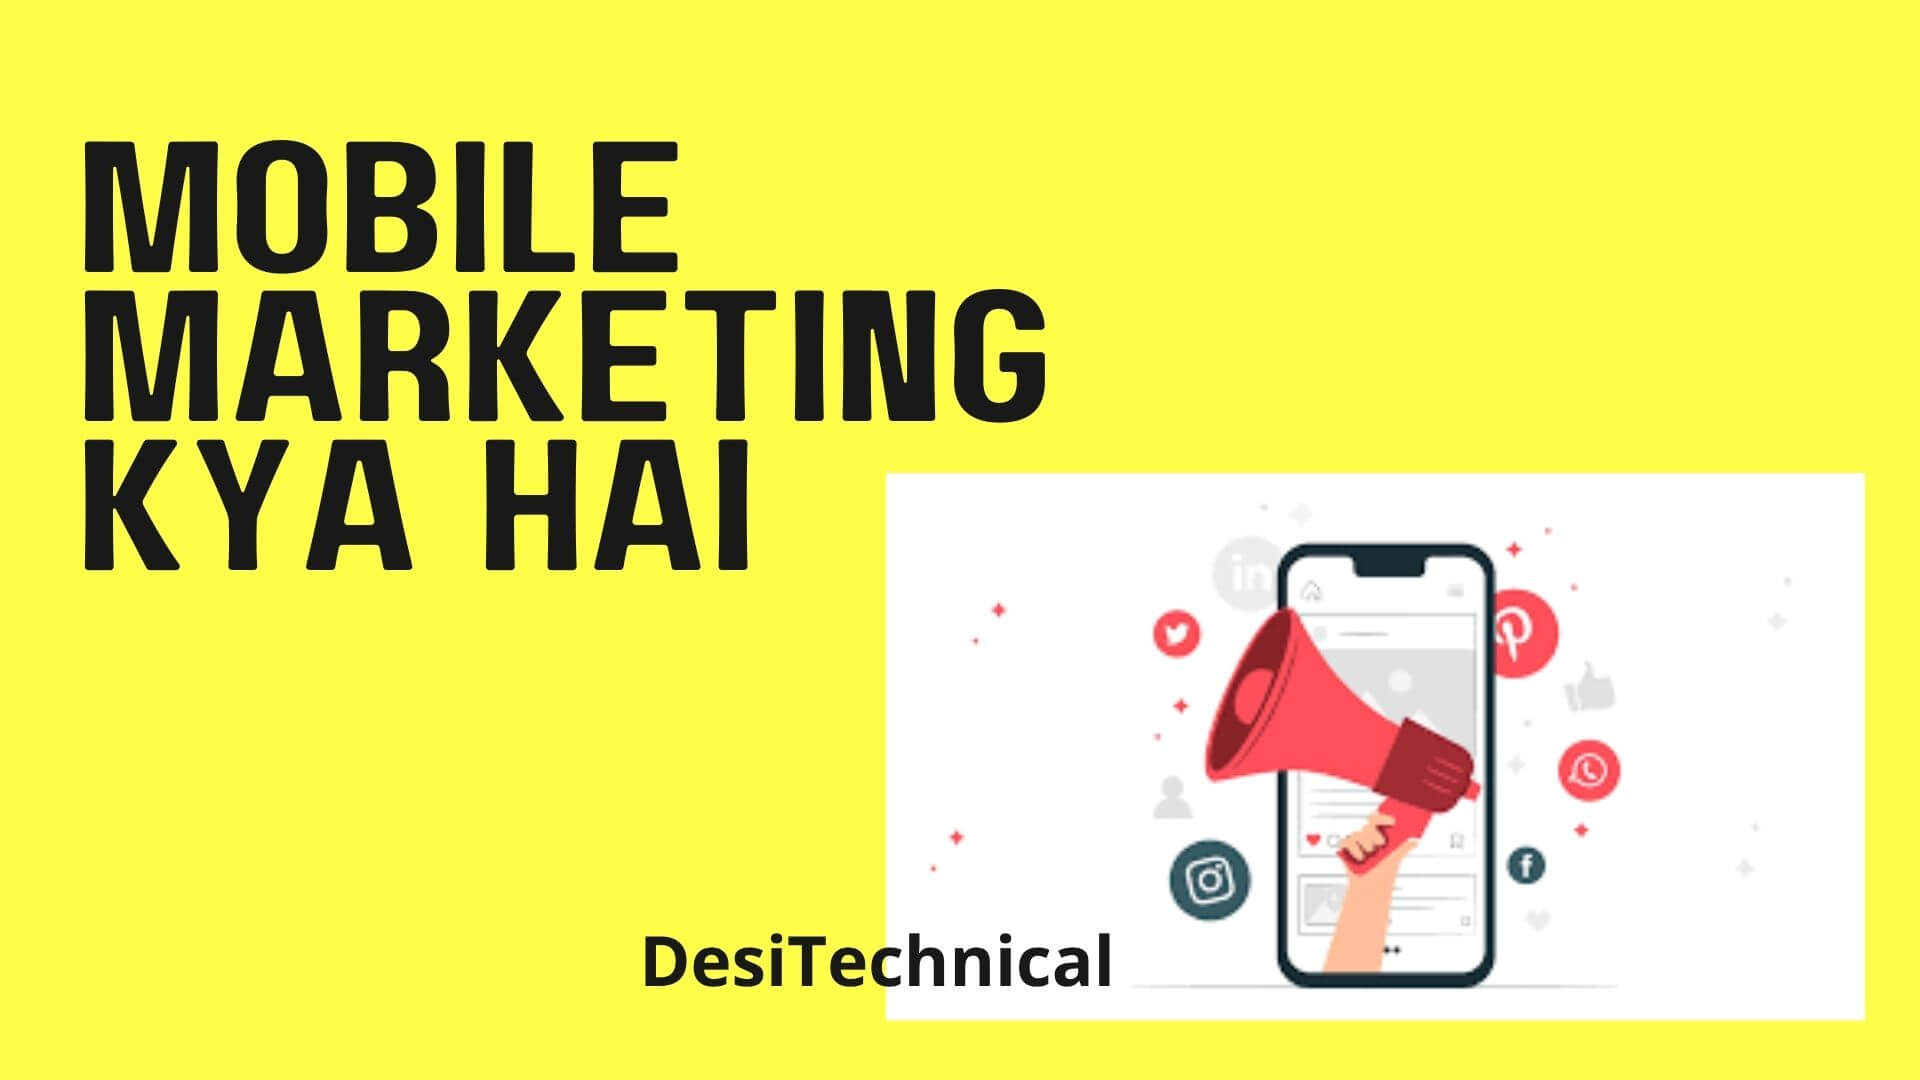 Mobile Marketing Kya Hai